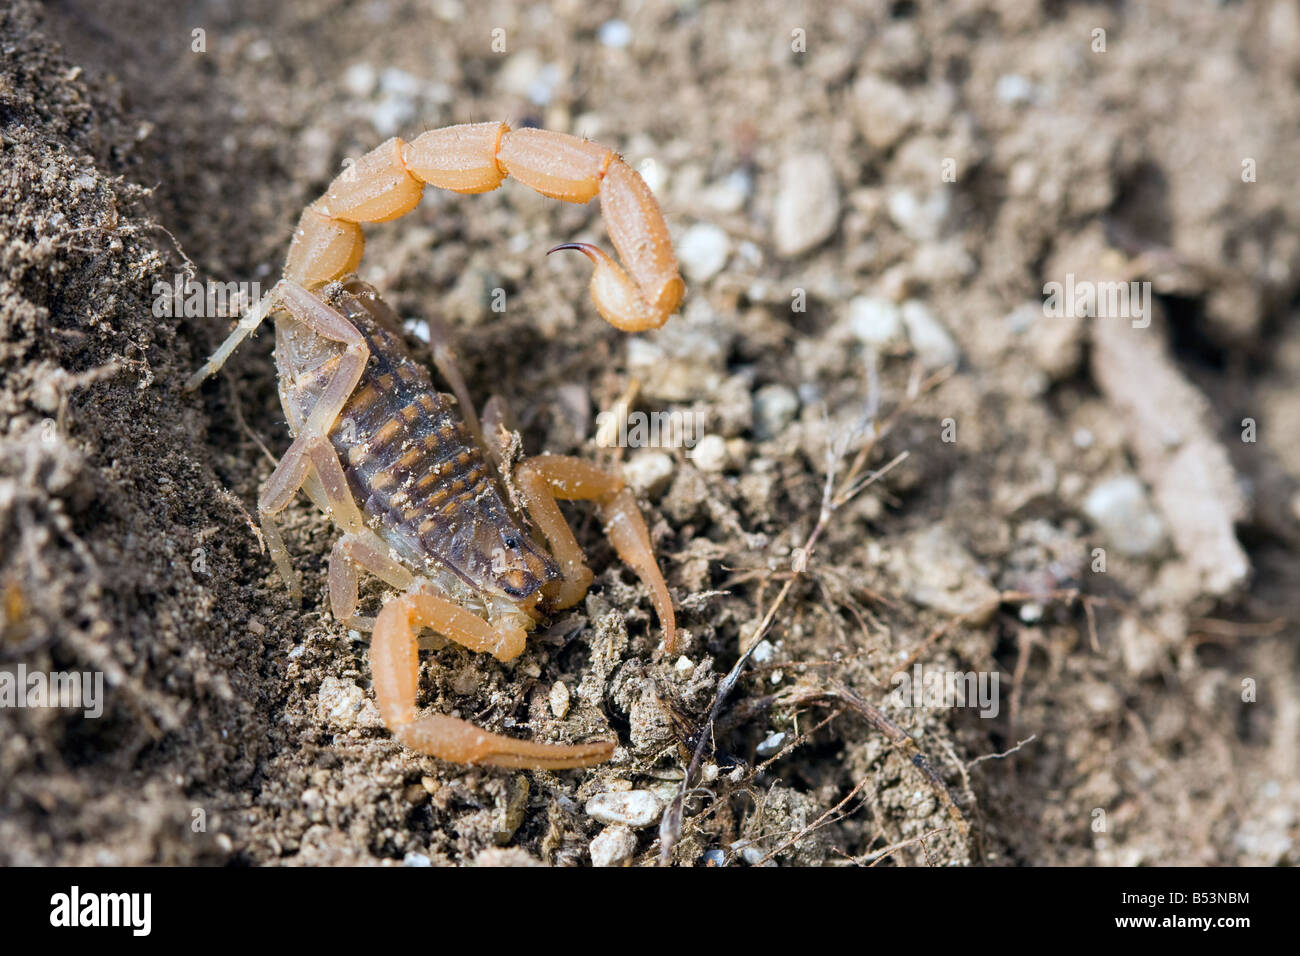 Common European Scorpion, Buthus occitanus Stock Photo